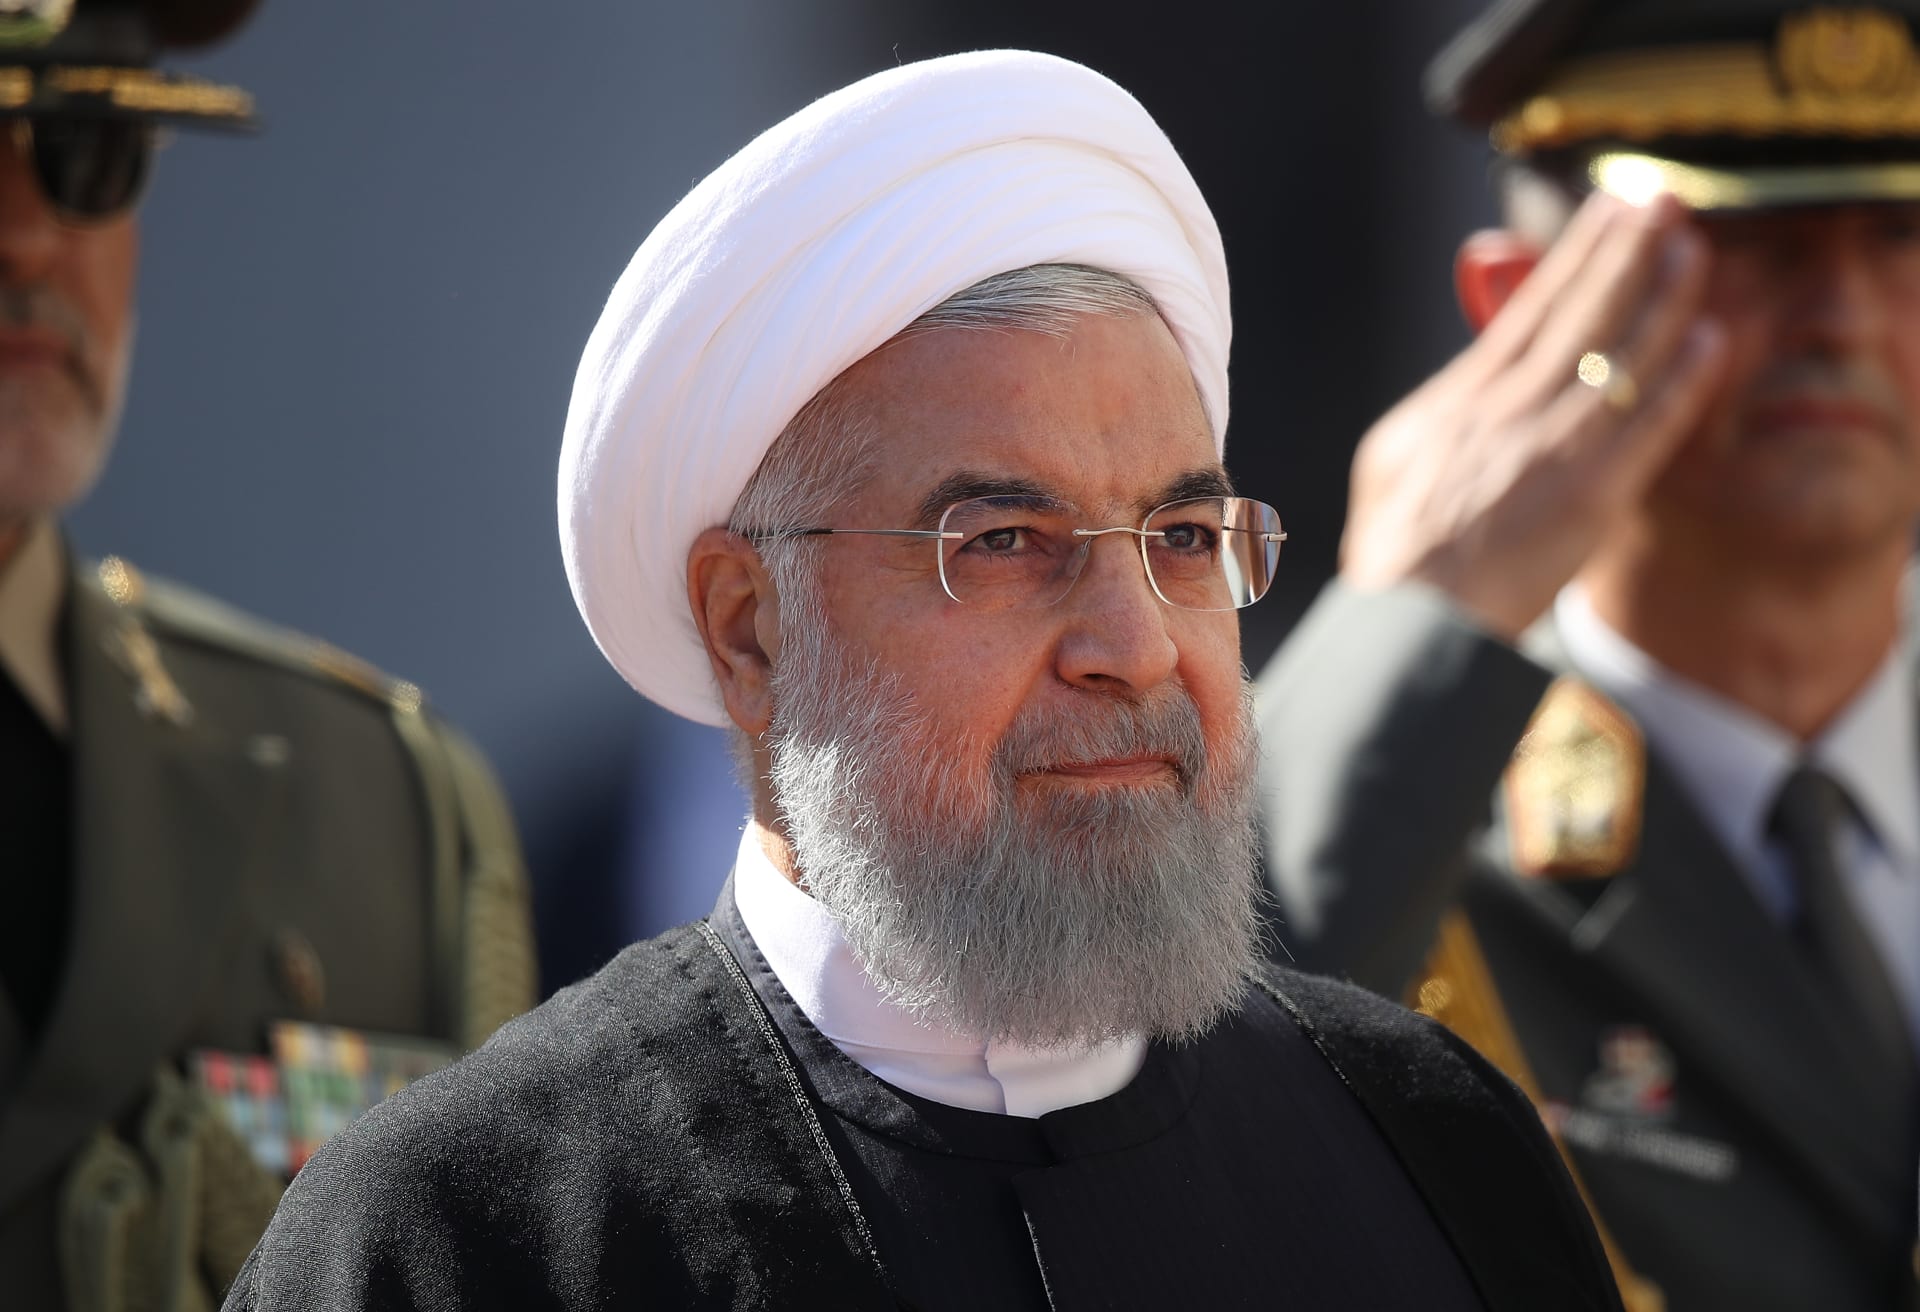 رأي.. کاملیا انتخابی فرد تكتب لـCNN: رجل دين سني بشعبية واسعة في إيران 